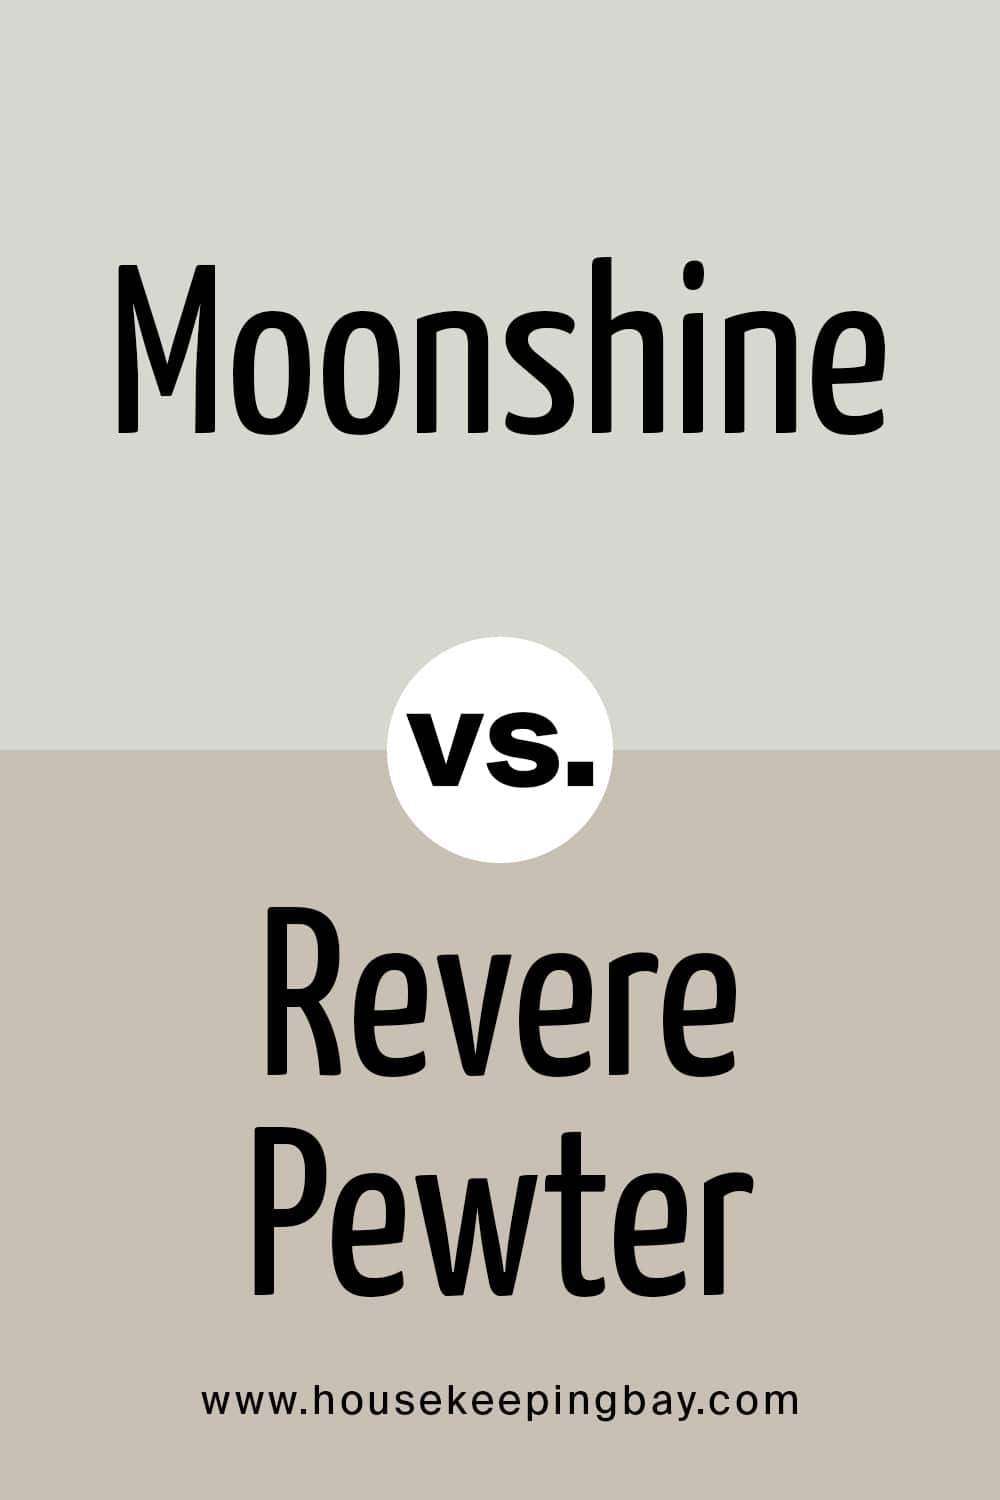 Moonshine vs Revere Pewter